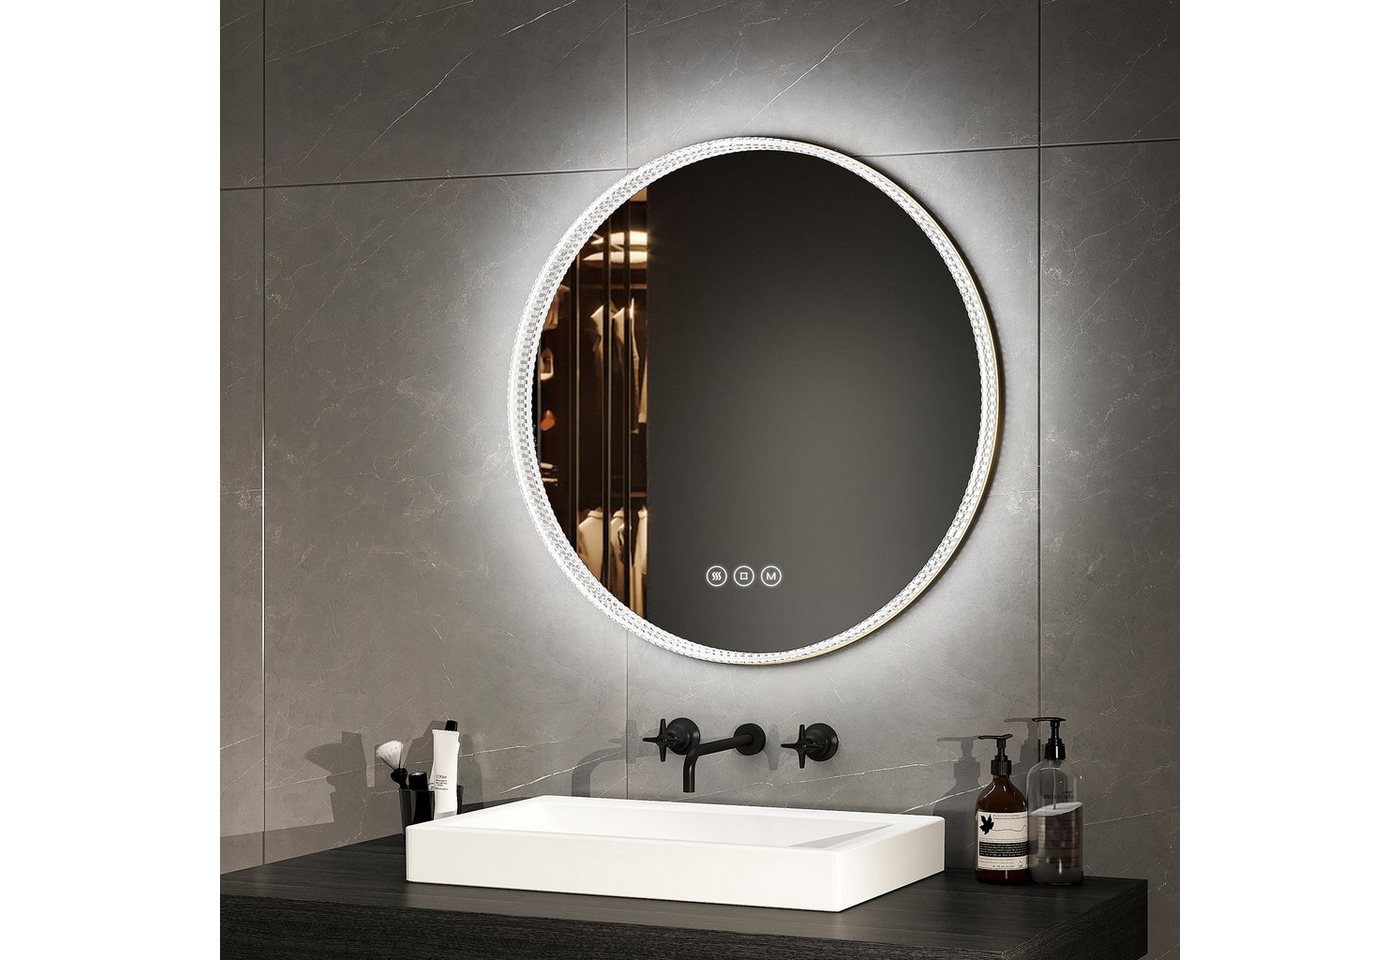 EMKE Badspiegel 60 cm LED Badezimmerspiegel 3 Lichtfarben Acryl Rahmen Spiegel, Wandspiegel mit Touch, Antibeschlage,Dimmbar, Memory-Funktion von EMKE